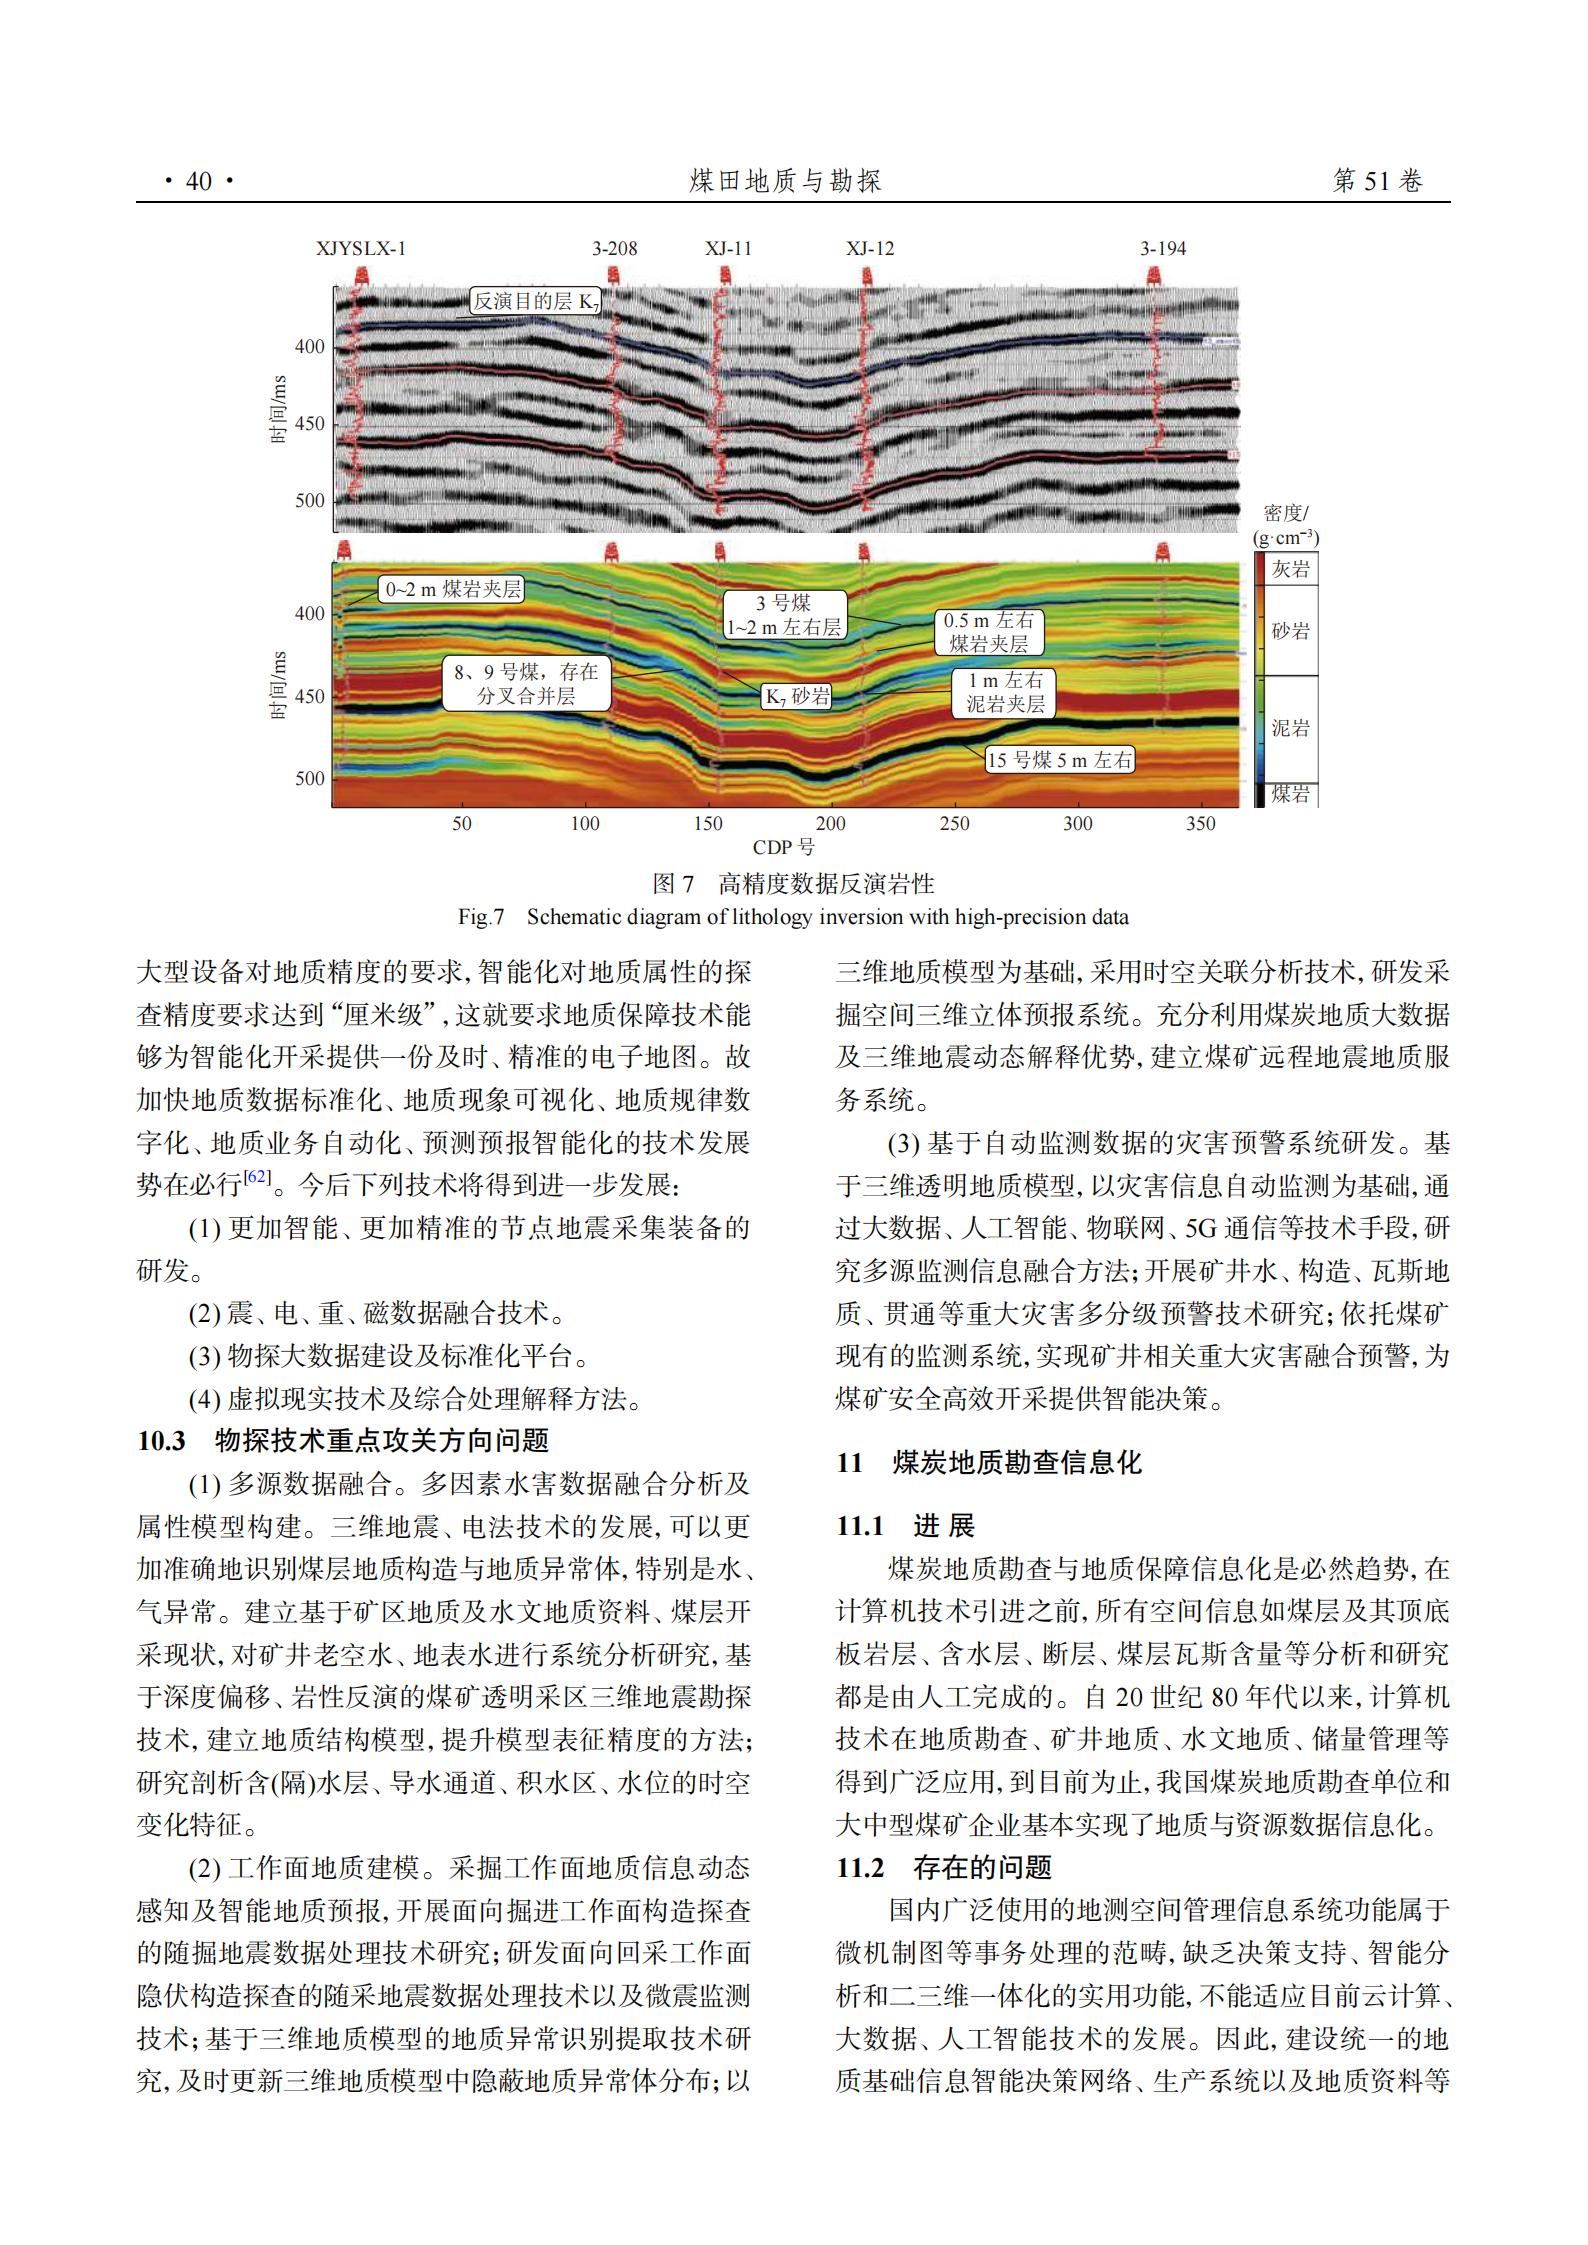 论中国煤炭地质勘查工作在新条件下的定位与重大研究问题_14.jpg